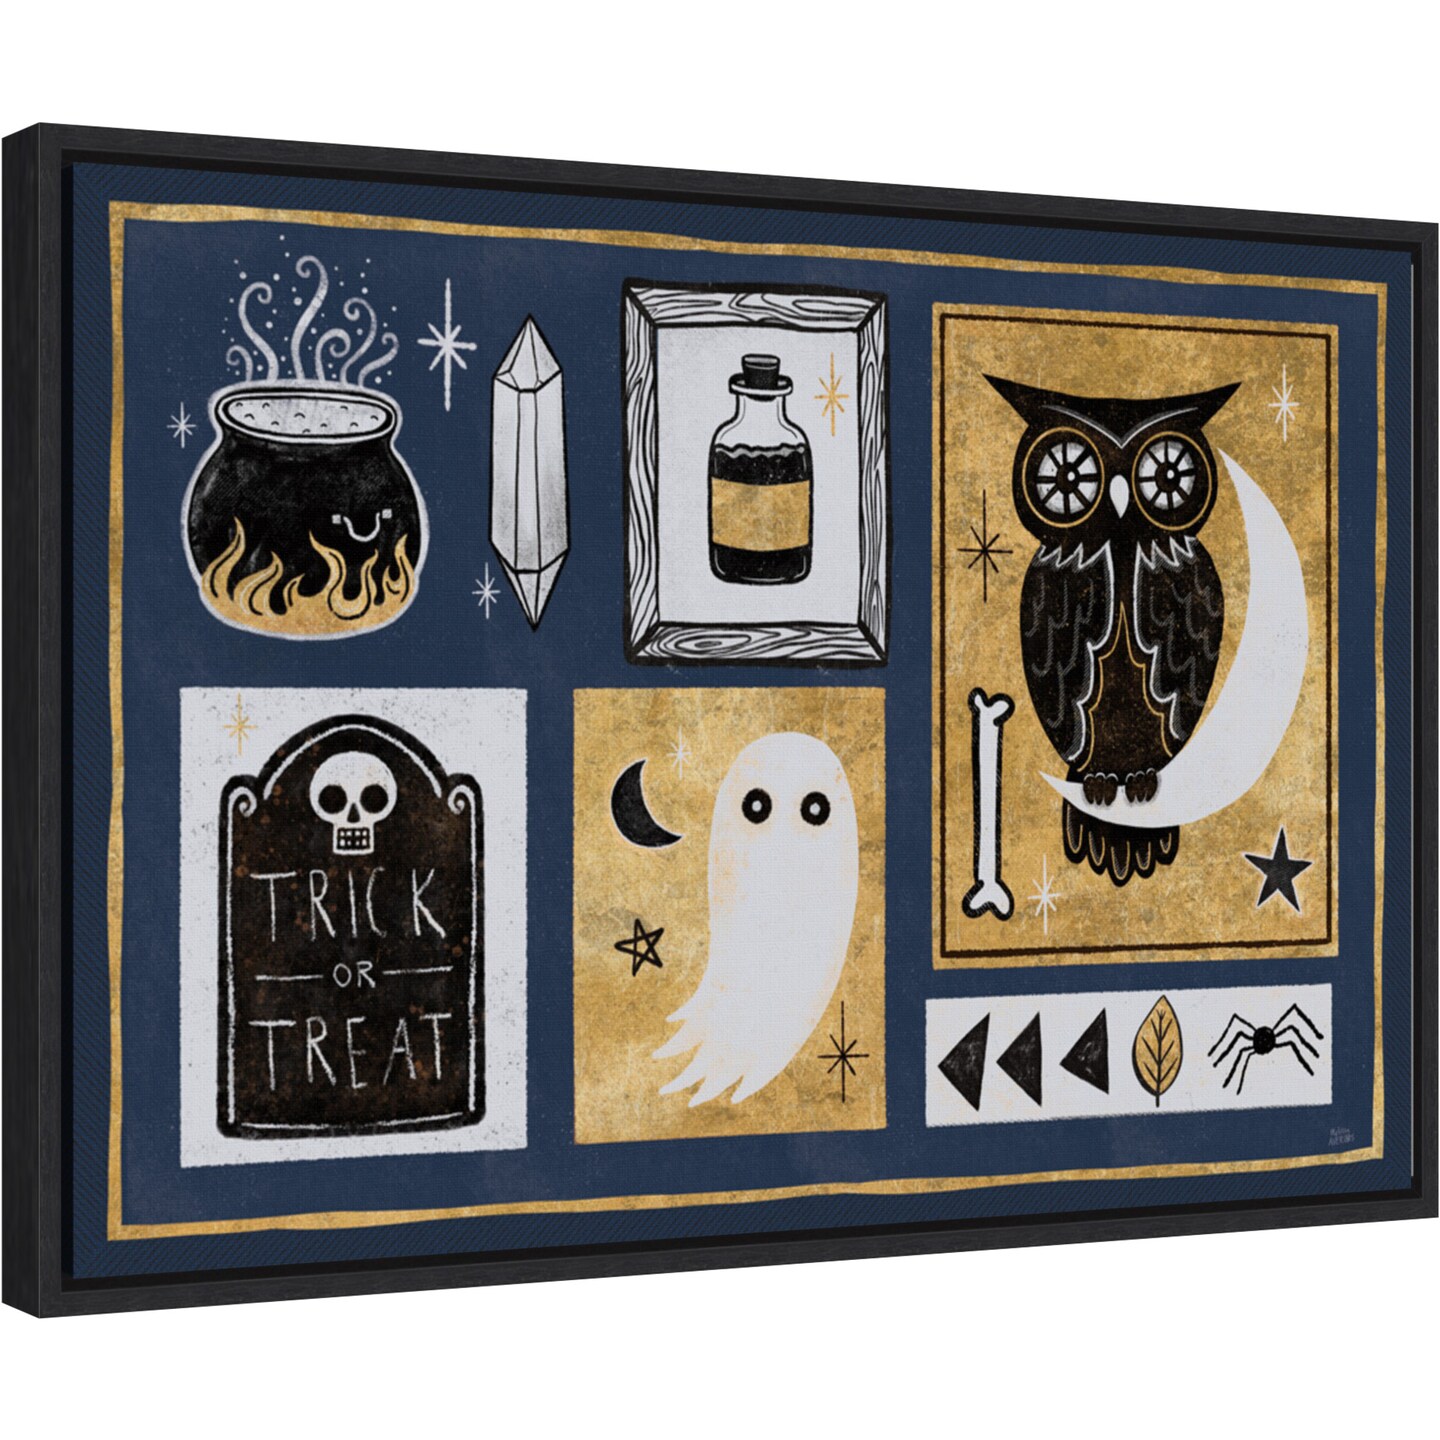 Frightfully Wicked II Owl by Melissa Averinos 23-in. W x 16-in. H. Canvas Wall Art Print Framed in Black